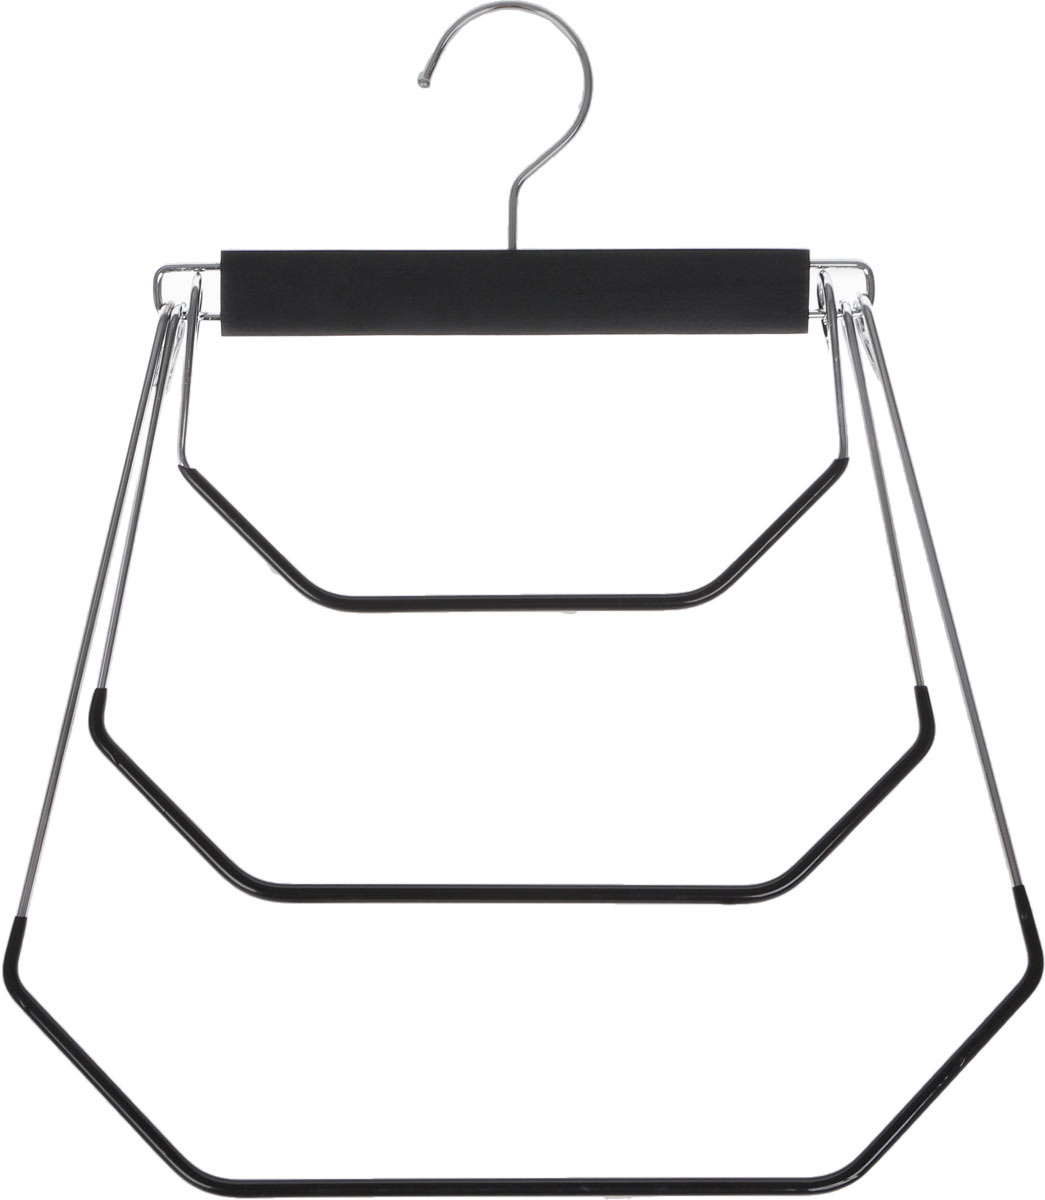 Вешалка-качели Valiant, 3-х уровневая, с противоскользящим покрытием, черный, 31 х 36,5 х 1,1 см